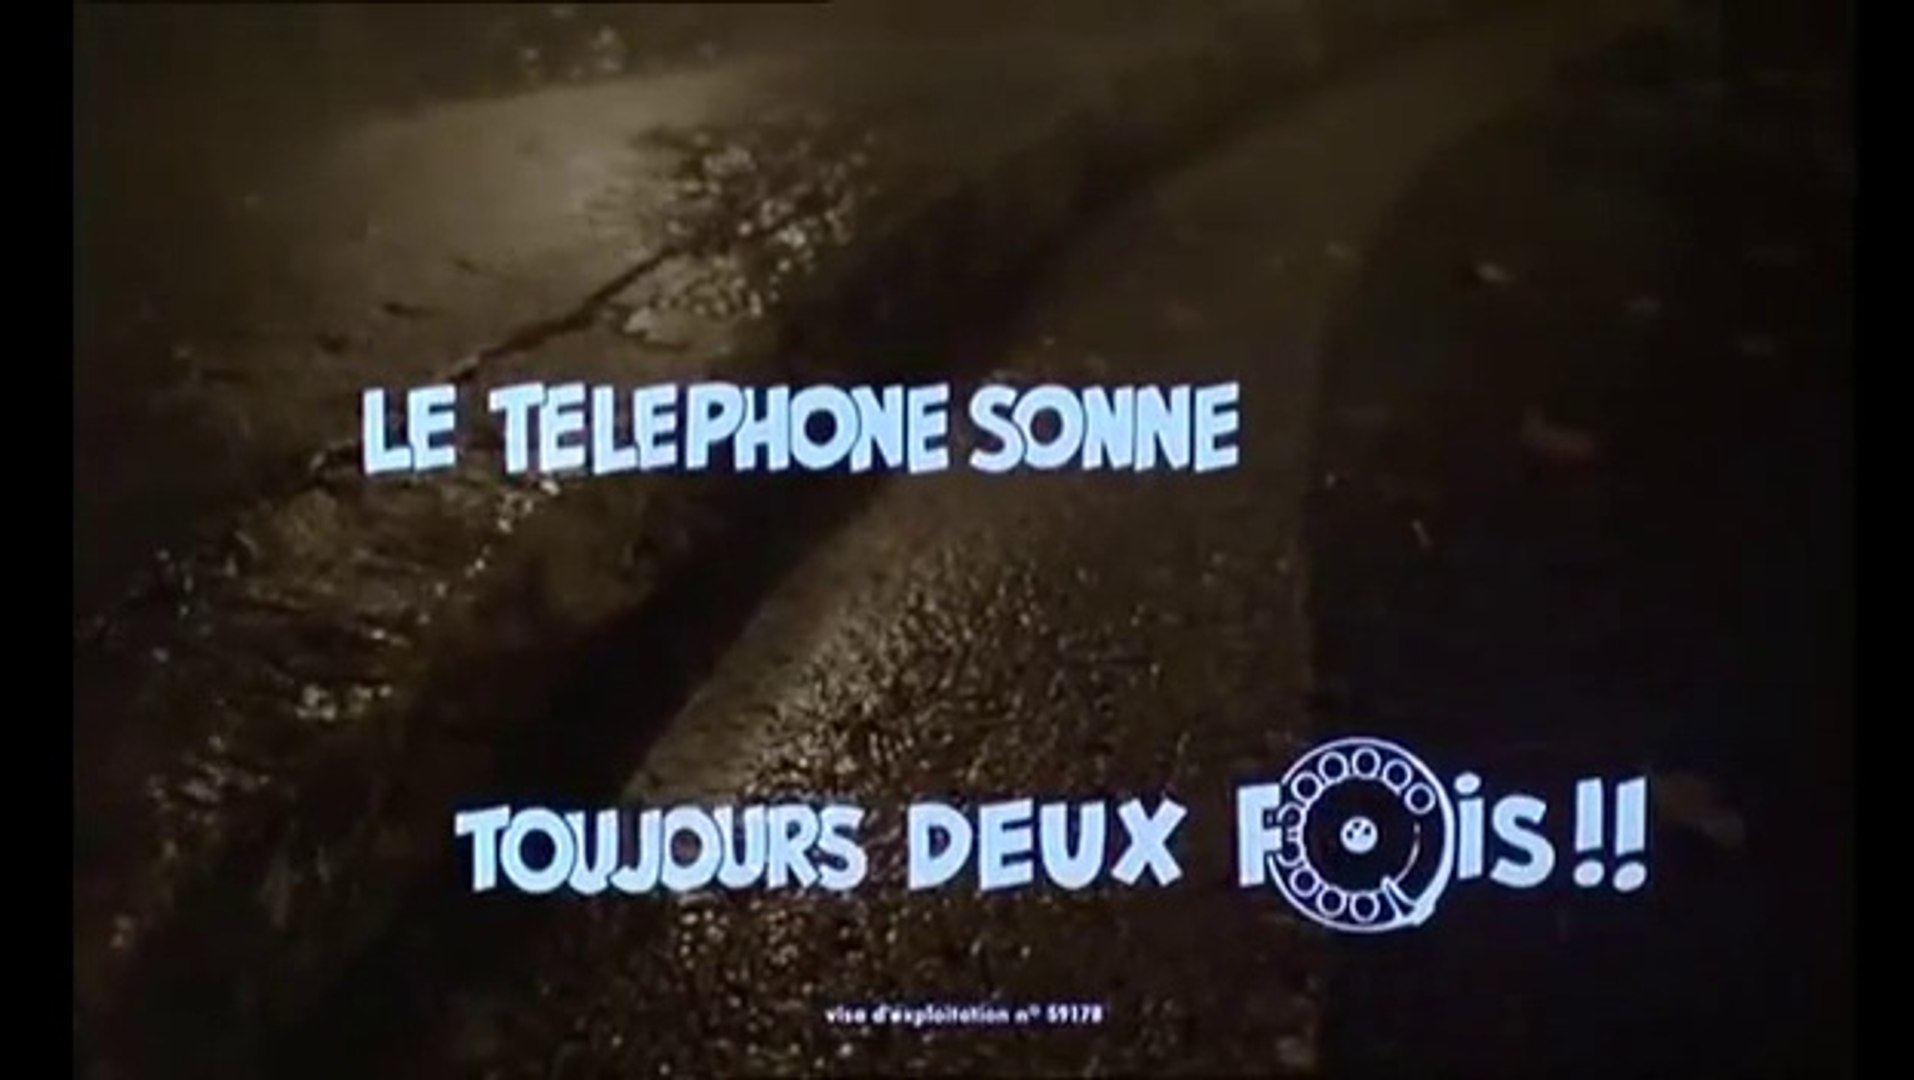 Le Téléphone sonne toujours deux fois: : Didier Bourdon